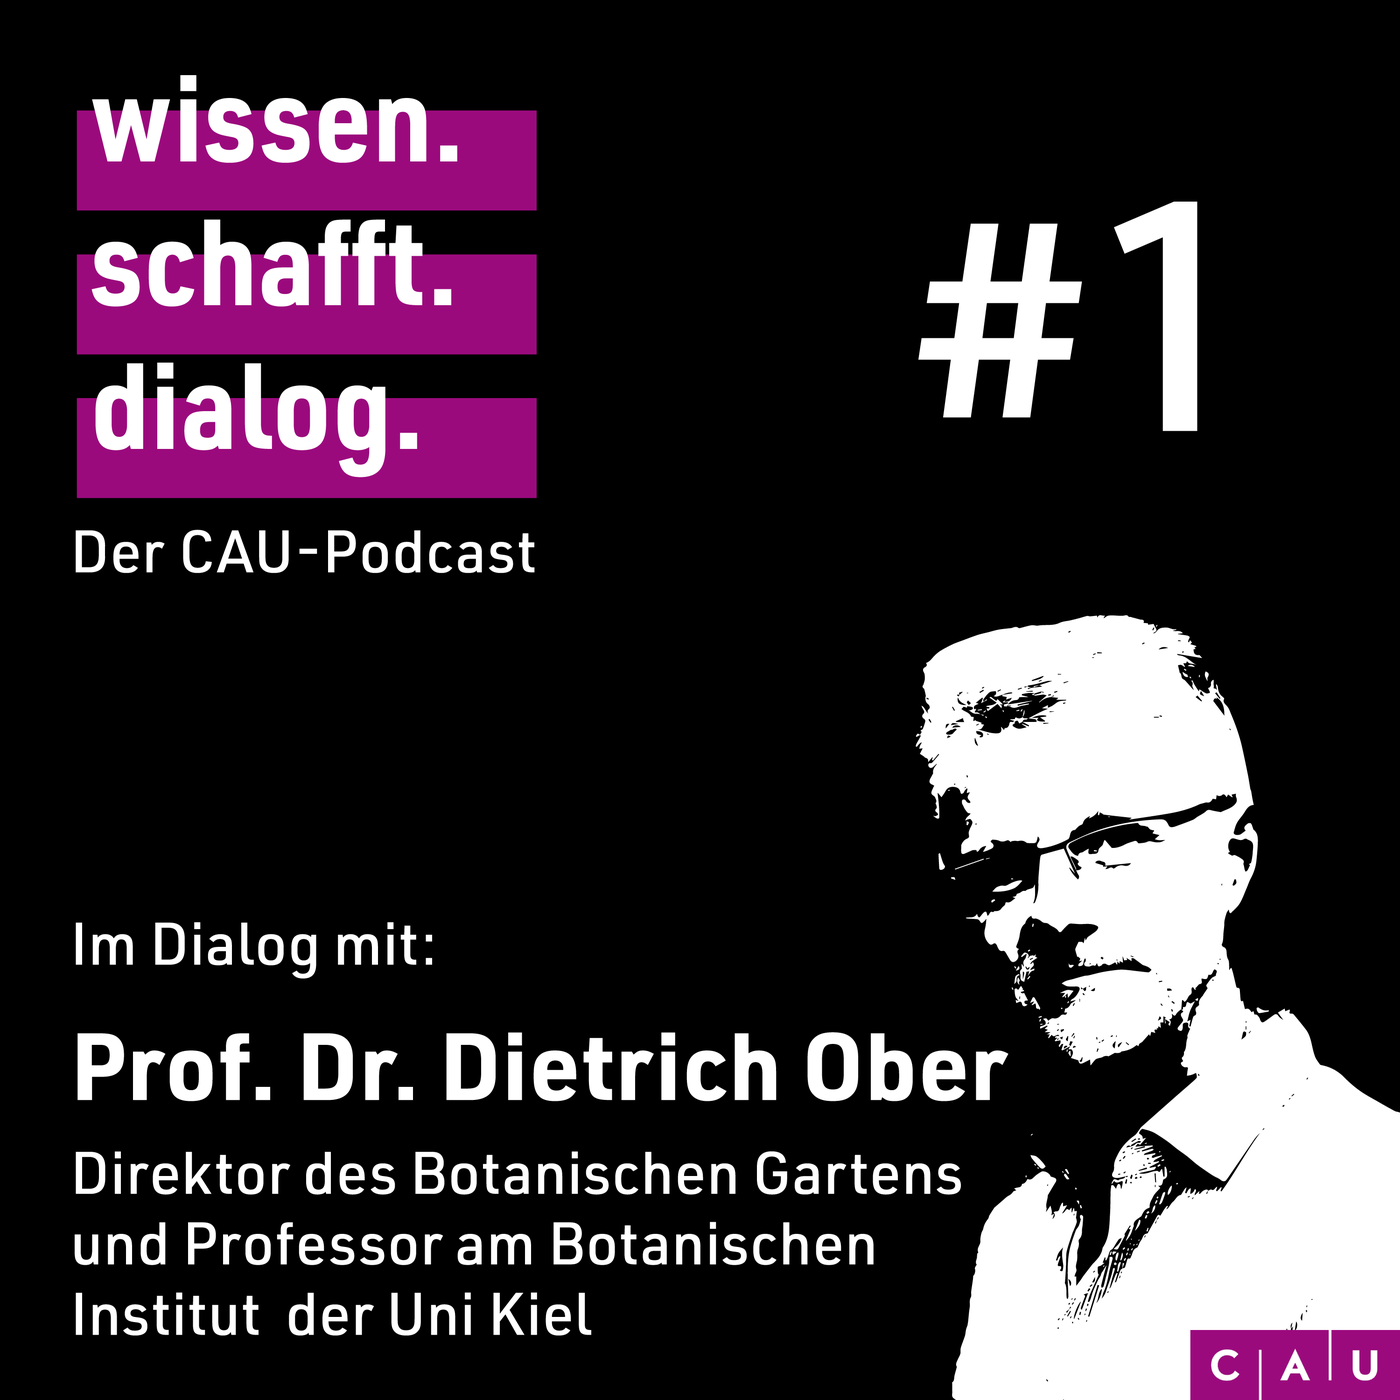 Im Dialog mit: Prof. Dr. Dietrich Ober